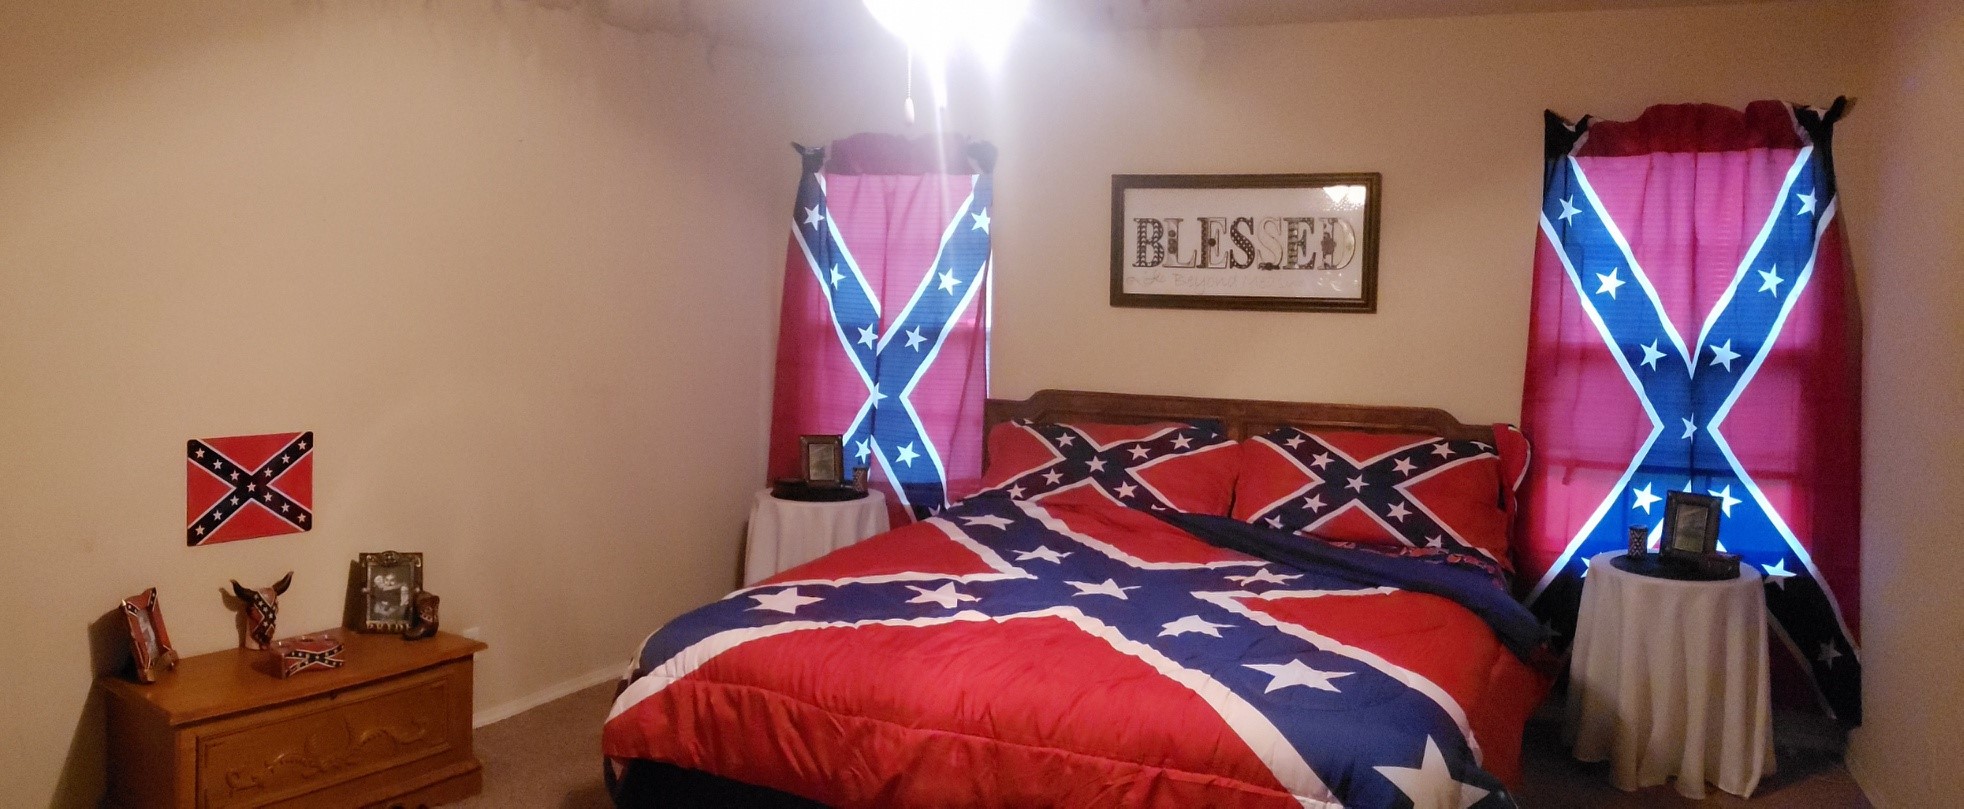 Rebel Flag Bedroom Decor